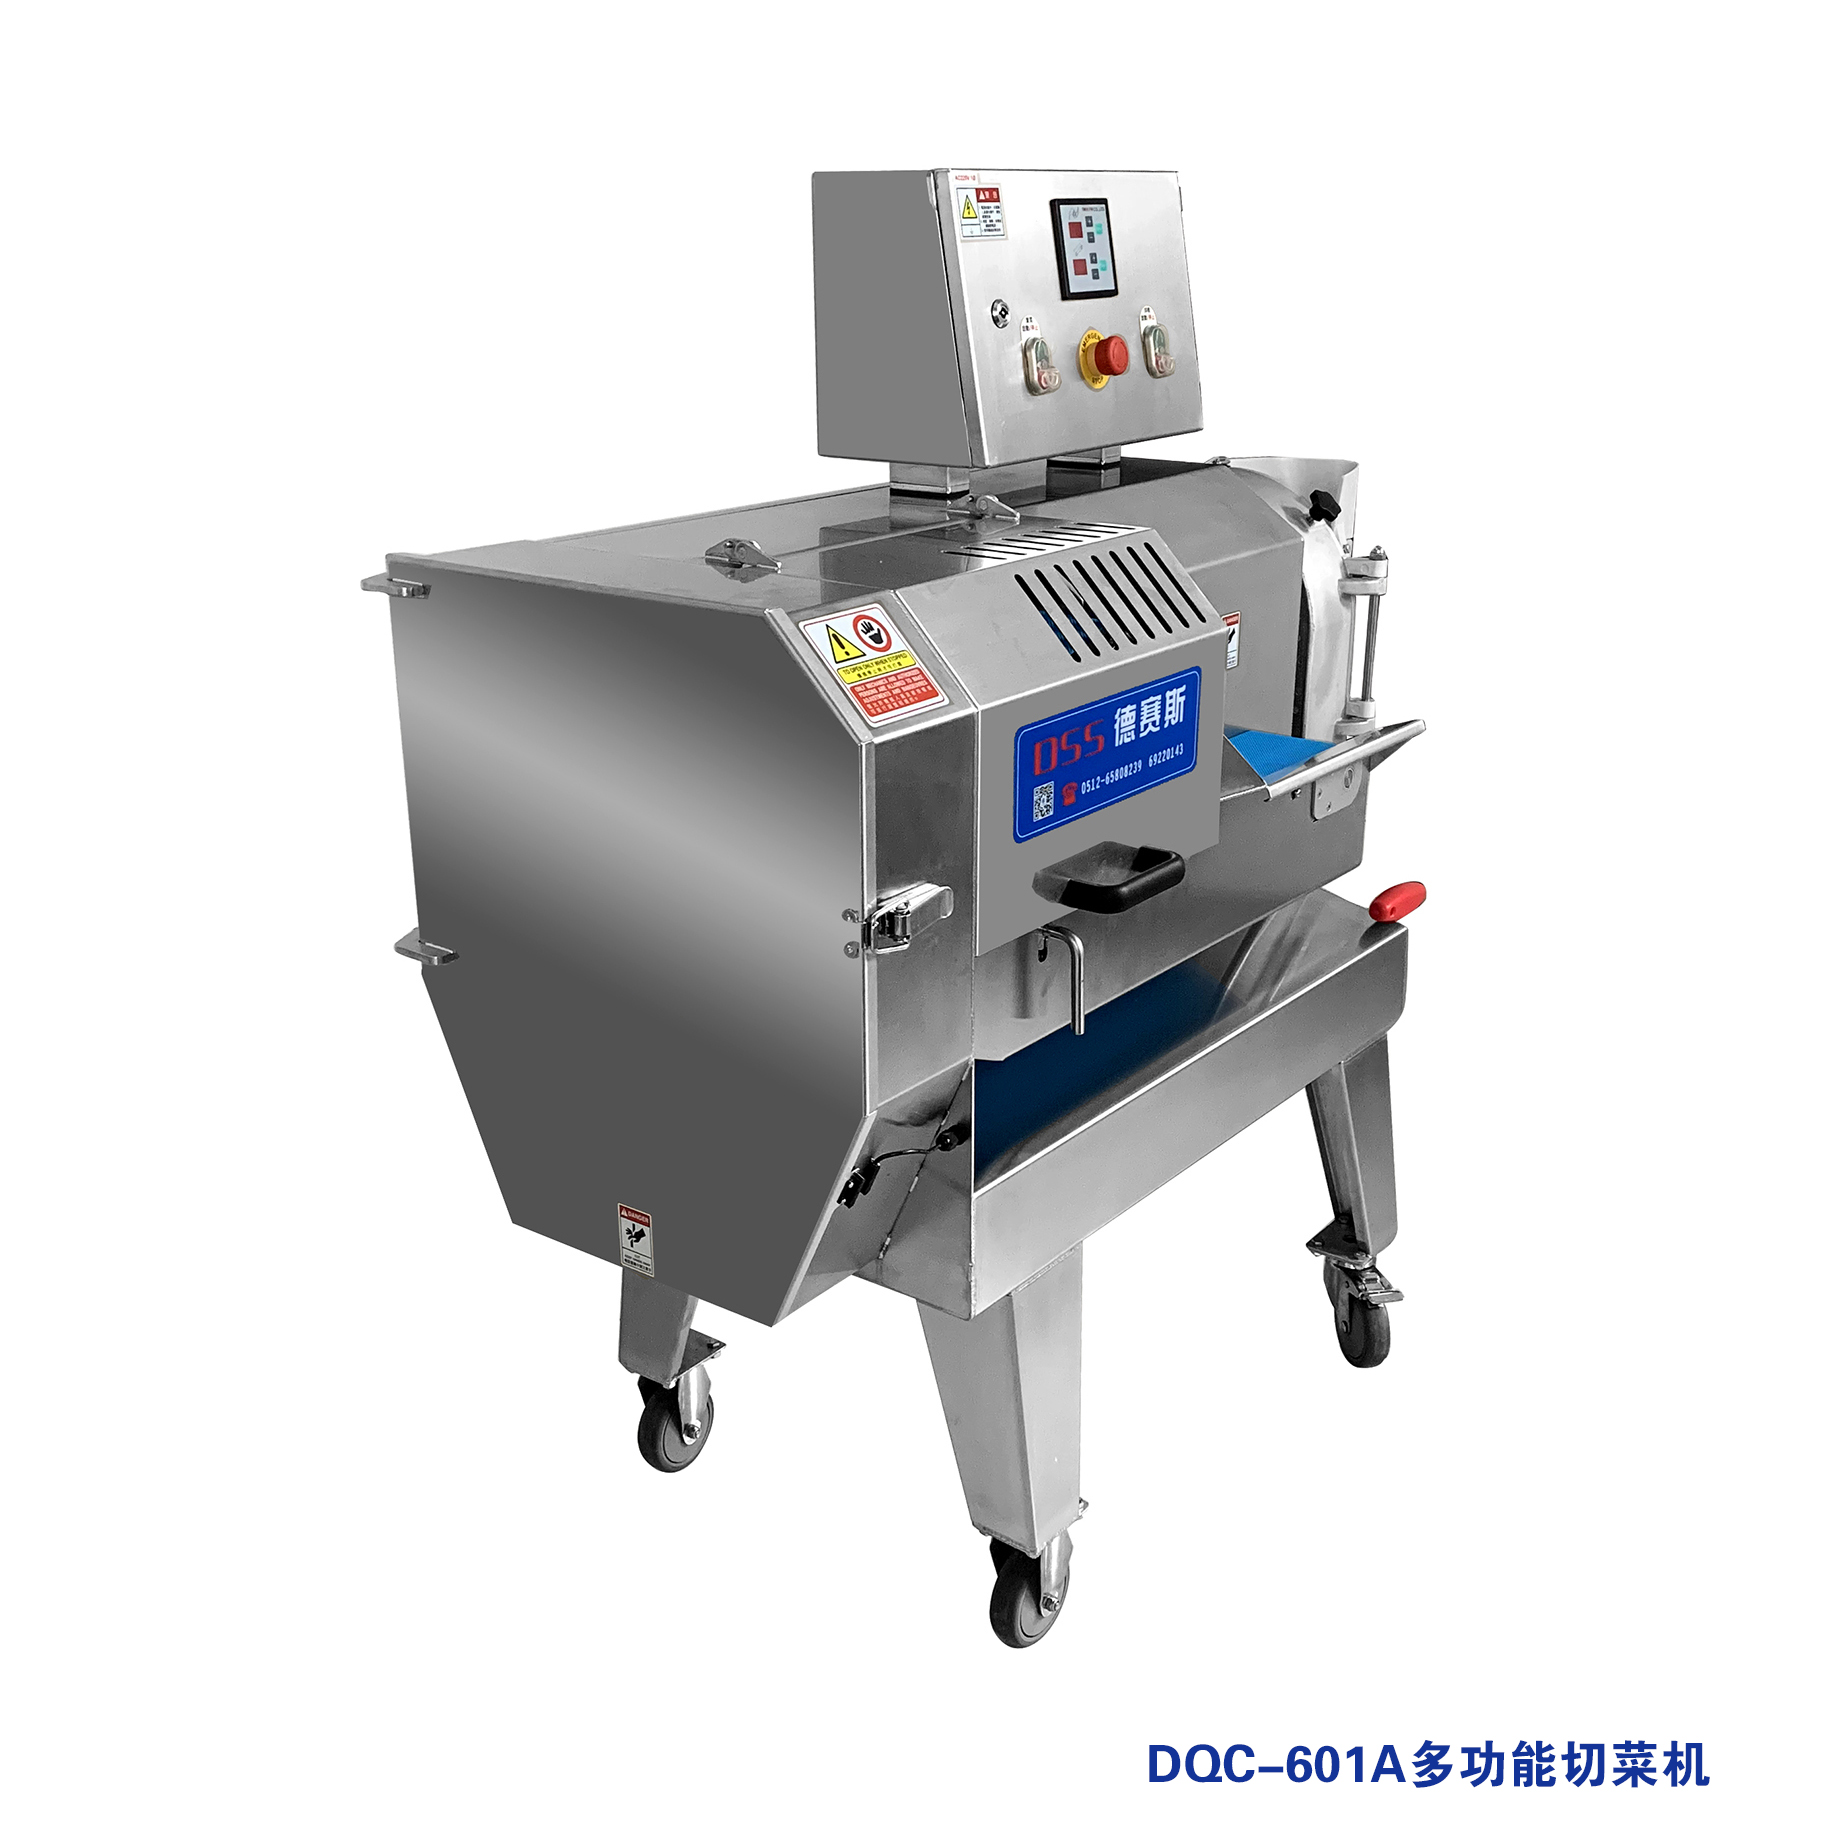 德赛斯DQC-601A能切肉片的多功能切菜机